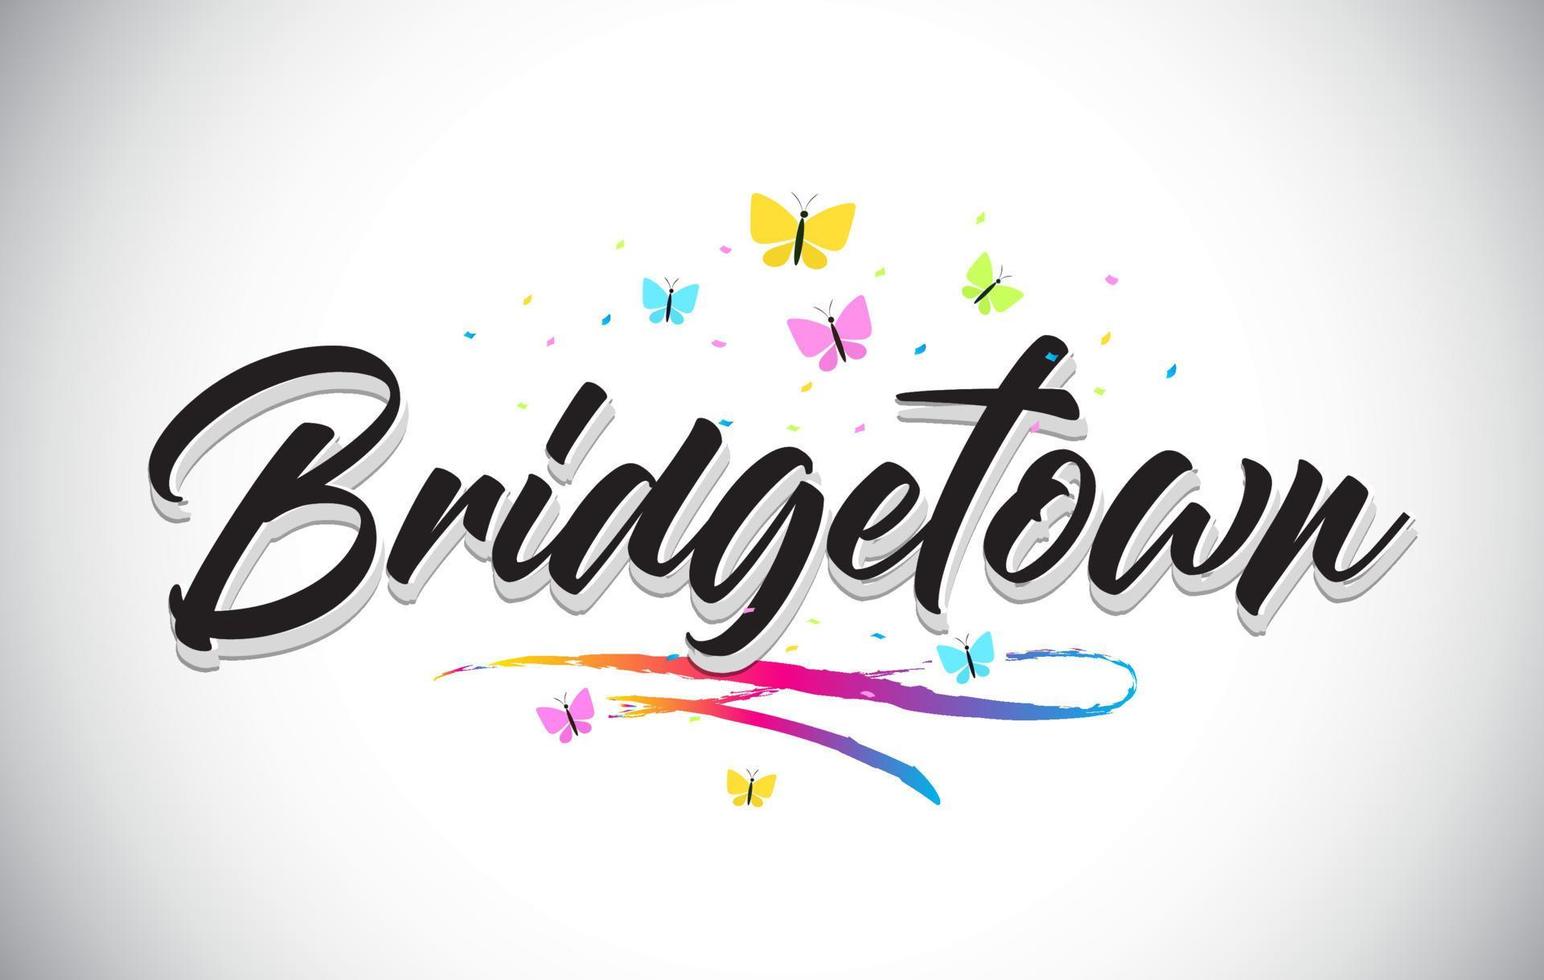 bridgetown testo parola vettoriale scritta a mano con farfalle e swoosh colorato.